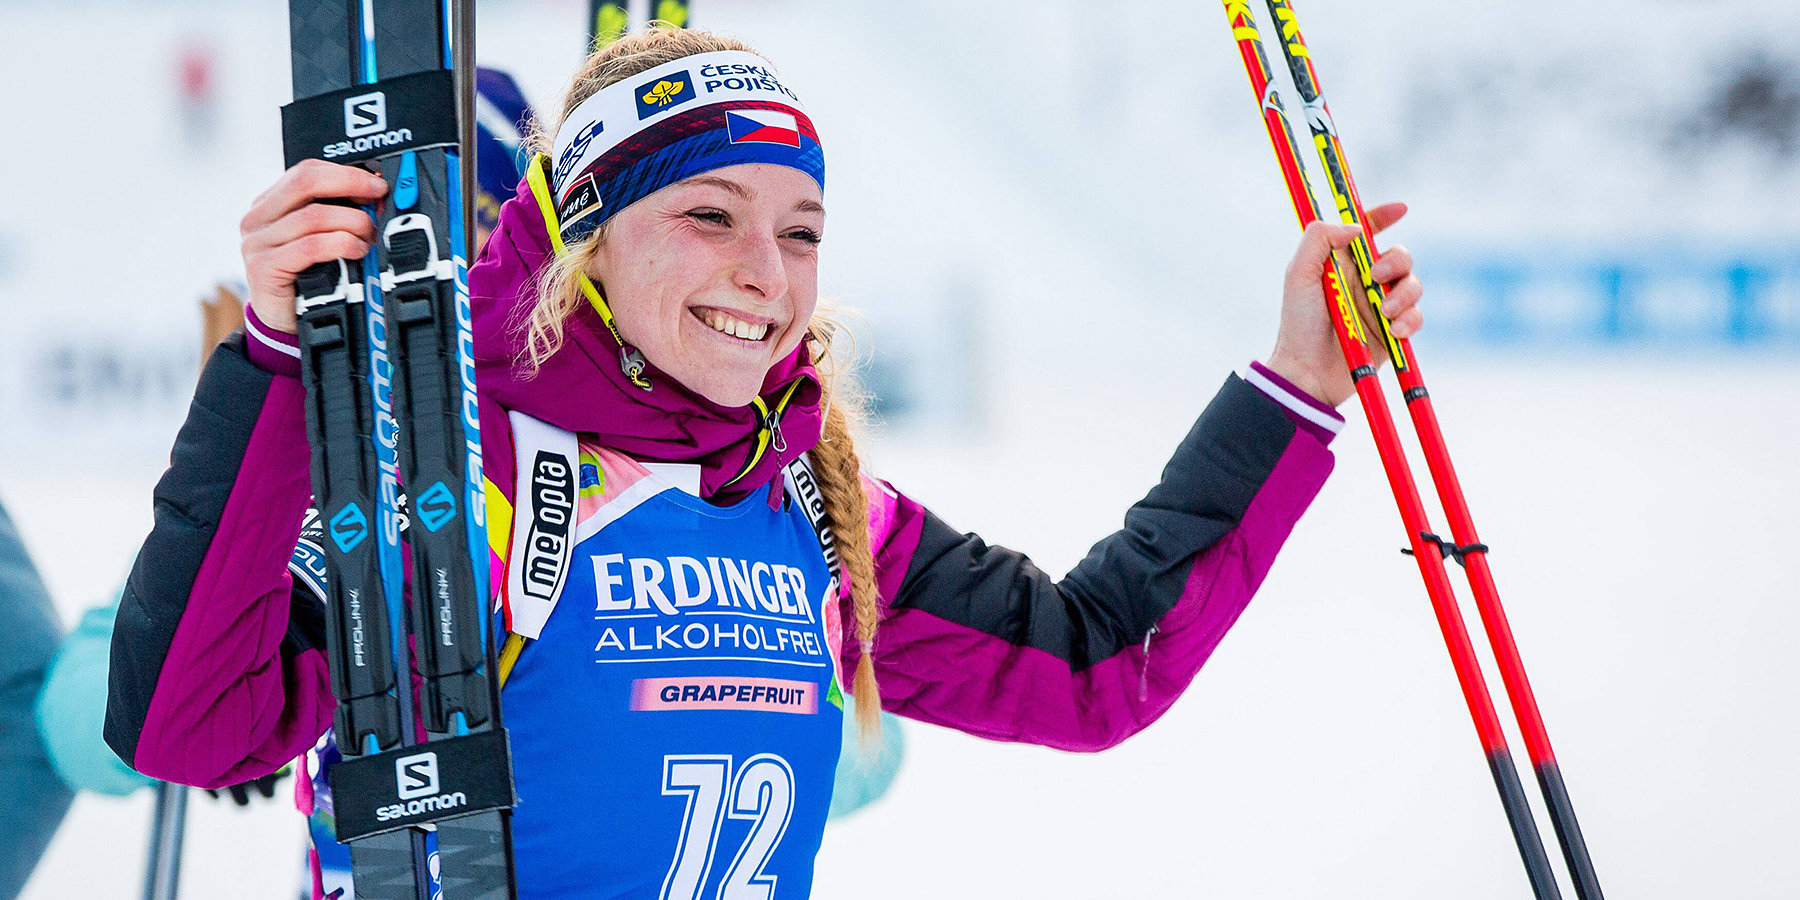 Давидова выиграла женскую индивидуальную гонку в Эстерсунде